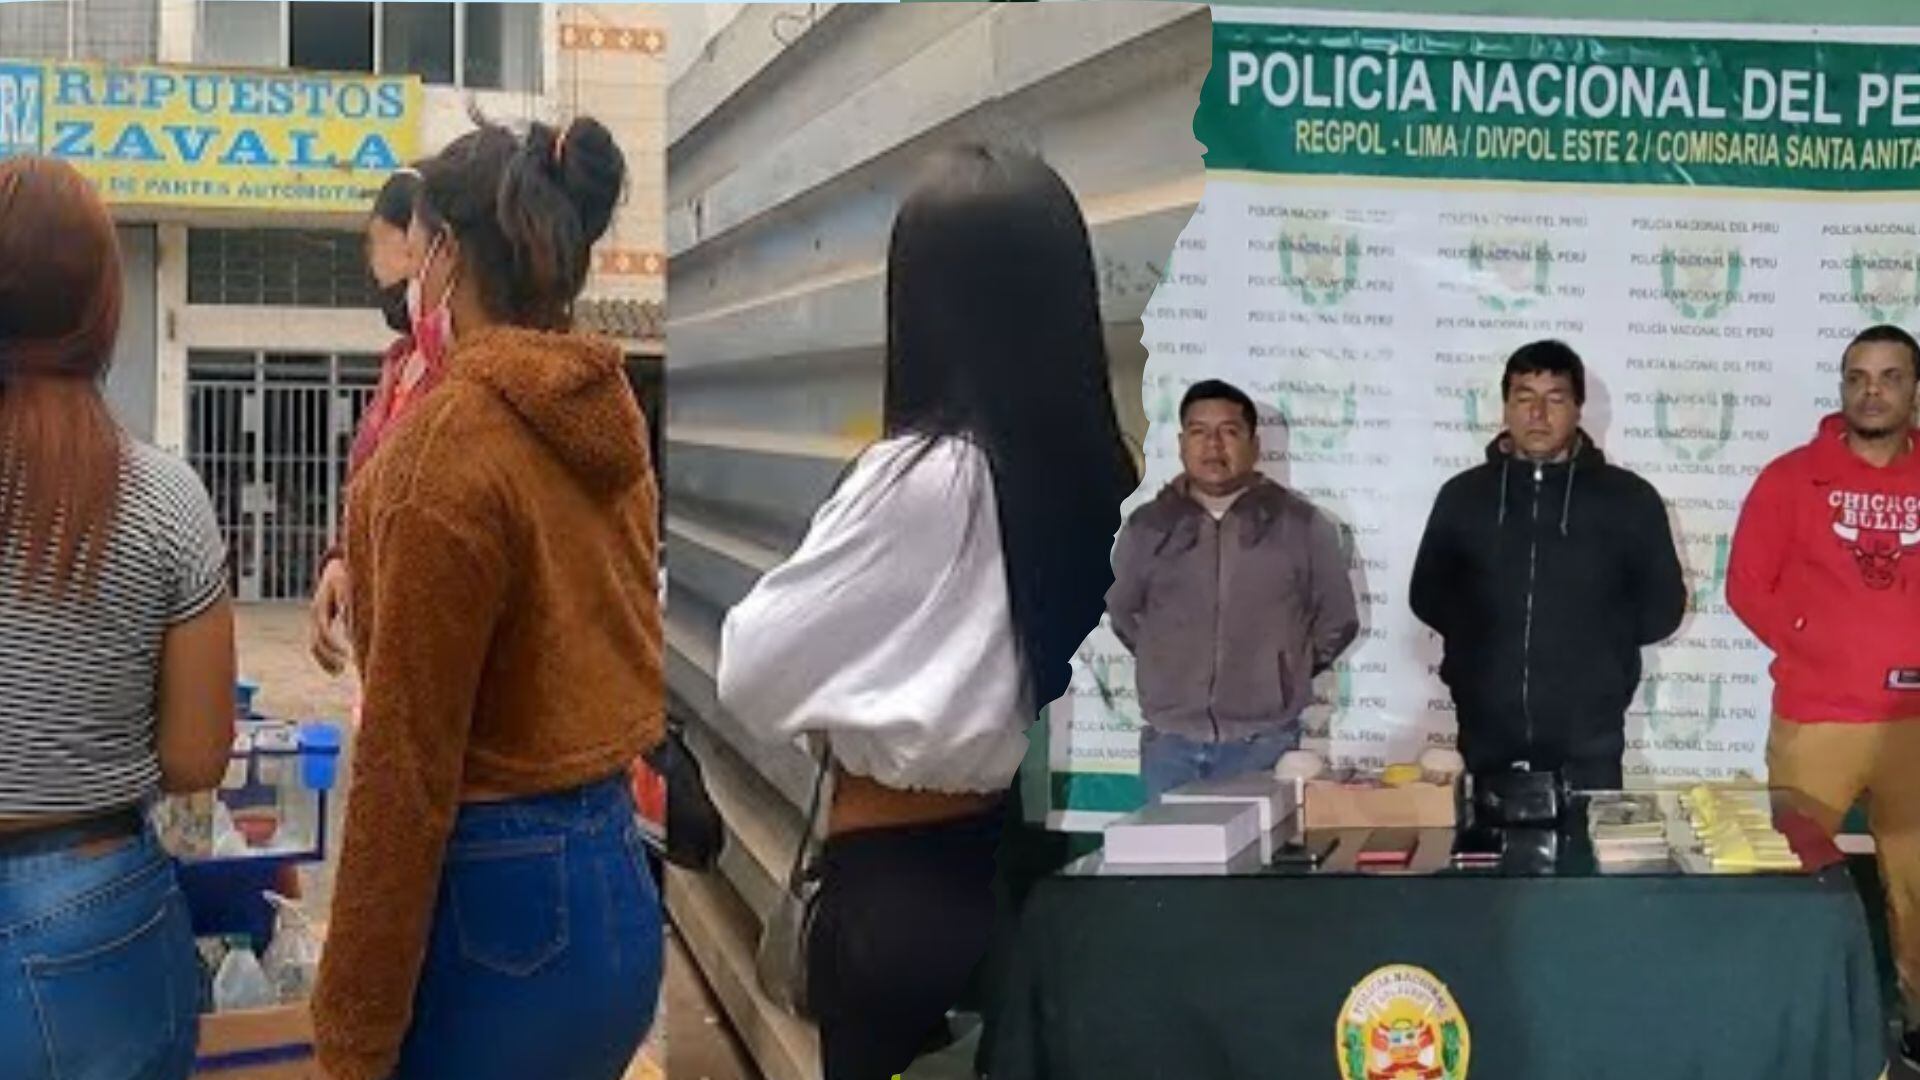 Esta peligrosa organización criminal se dedicaba a la trata de personas y al proxenetismo, según información de la Policía Nacional del Perú (PNP).